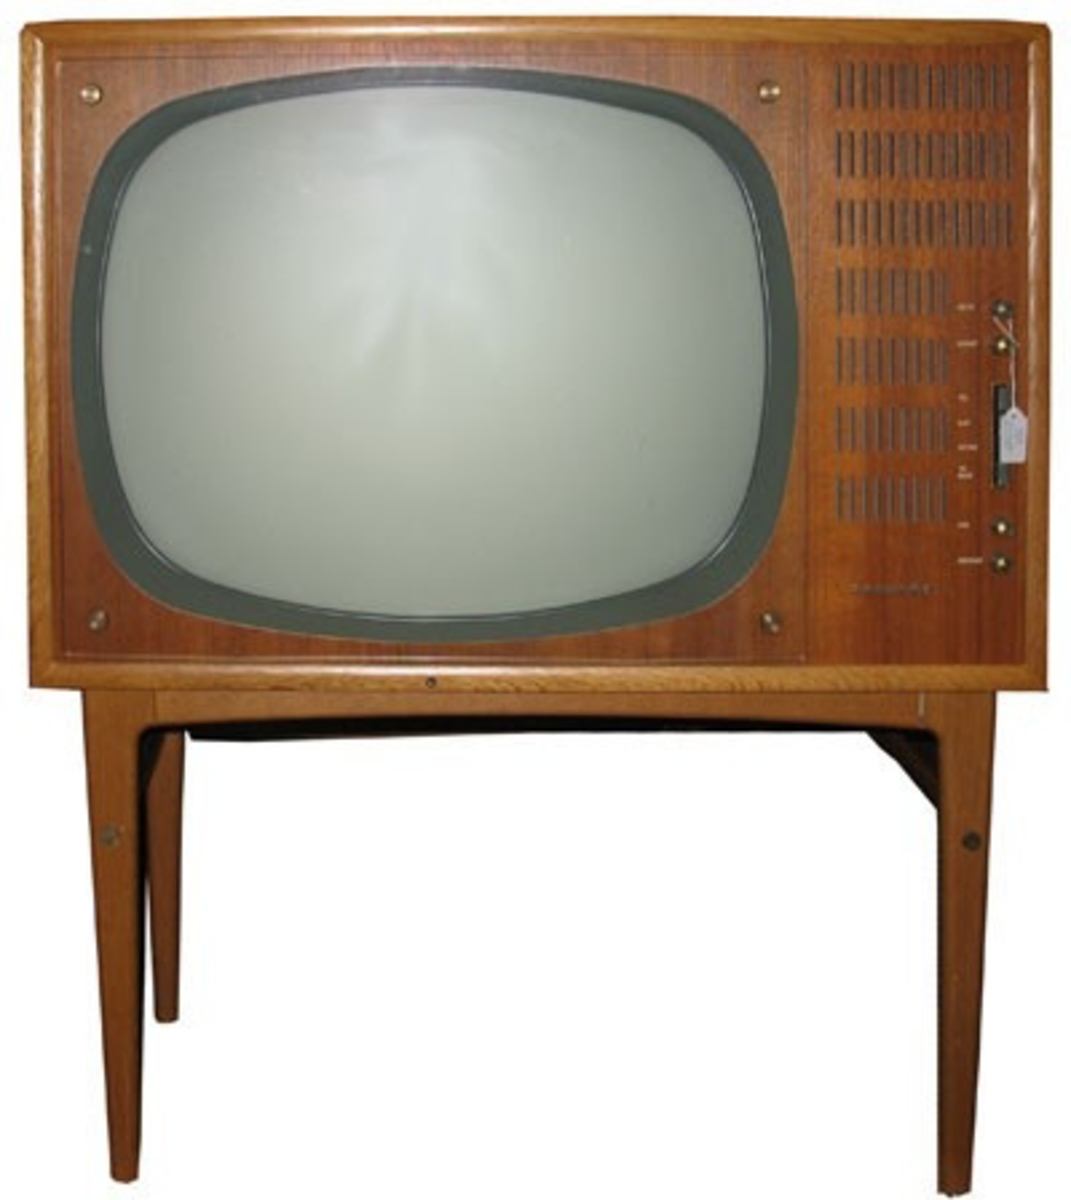 x 410  TV skärmen är 40 x 30 cm

TV apparat på 4 ben. Oval skärm. Apparaten inköptes när Uddevallas sändare startade 1959-60.